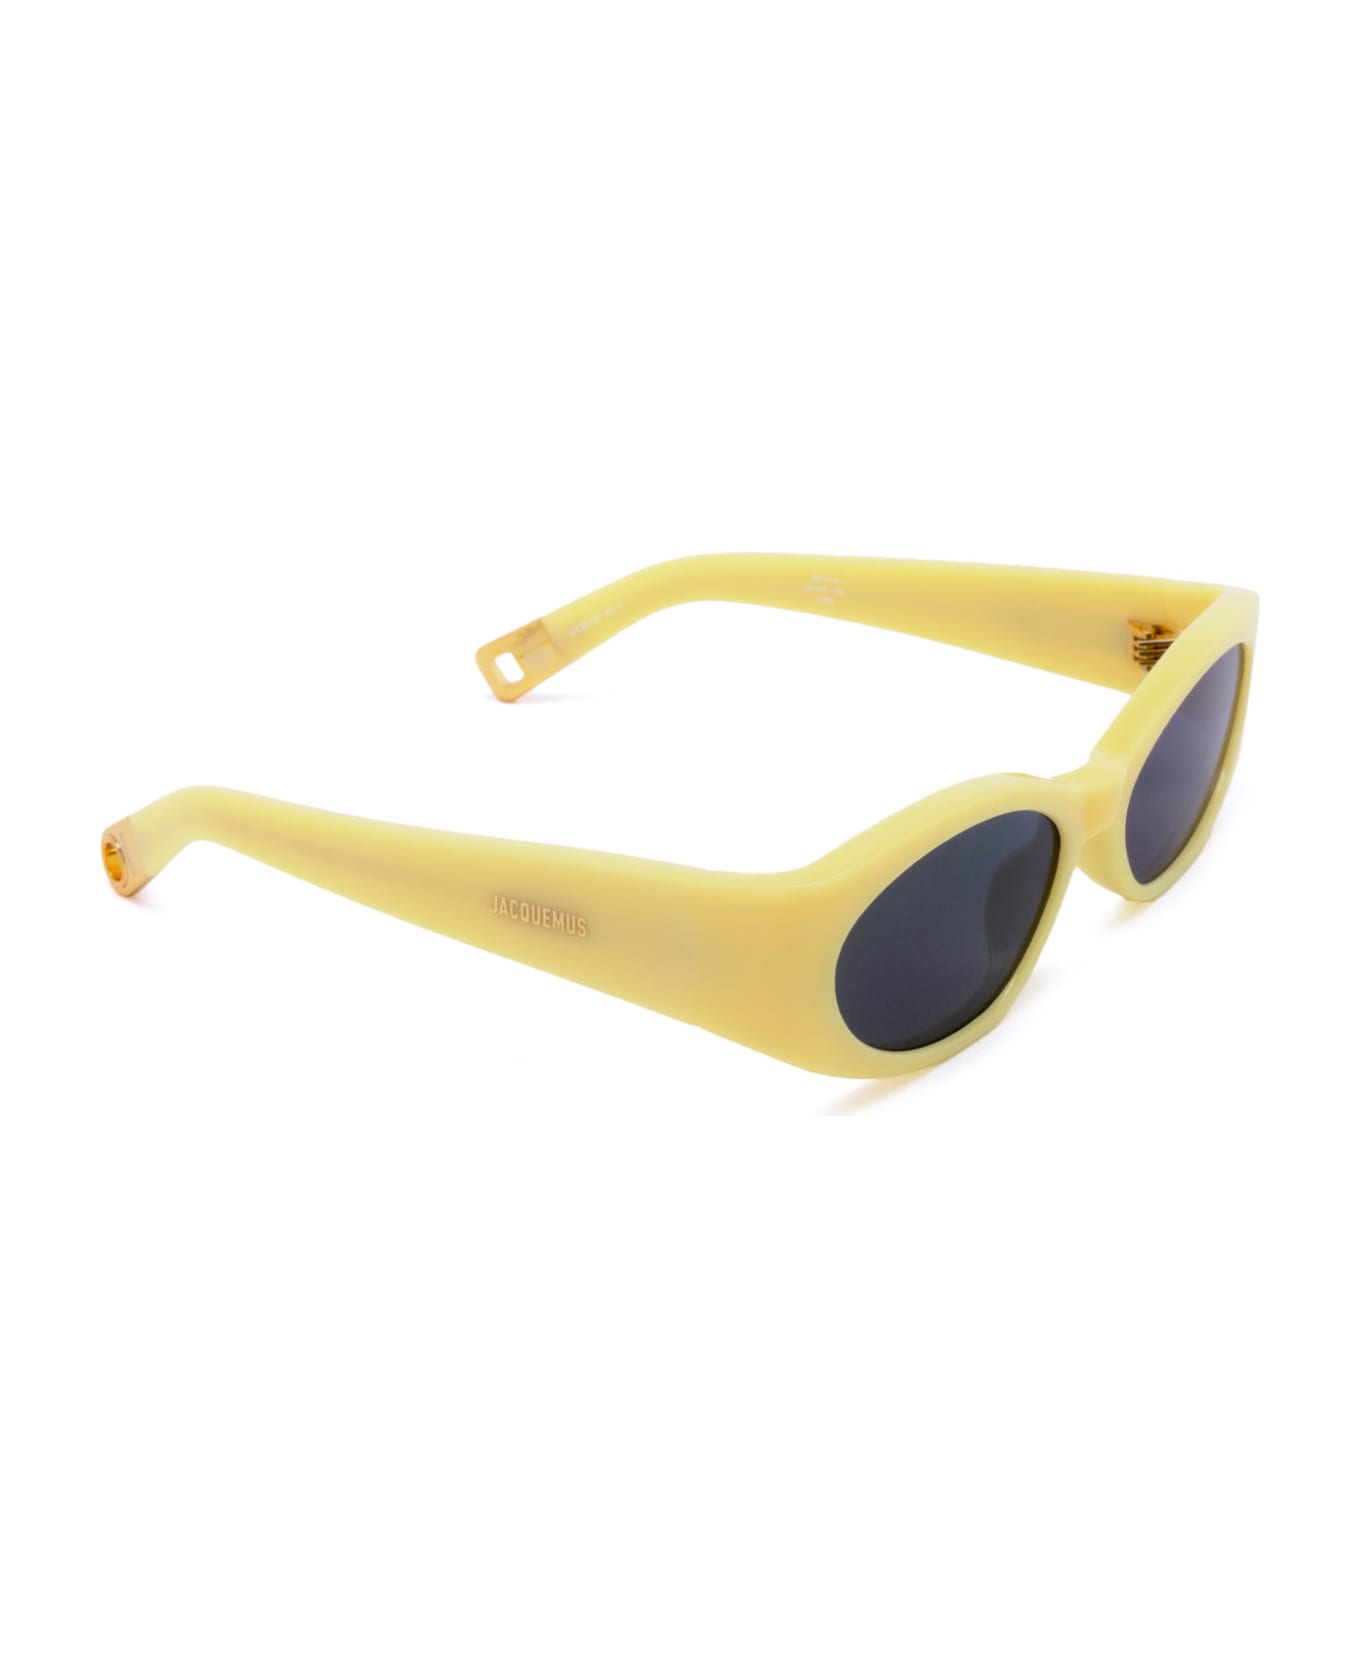 Jacquemus Jac4 Yellow Sunglasses - Yellow